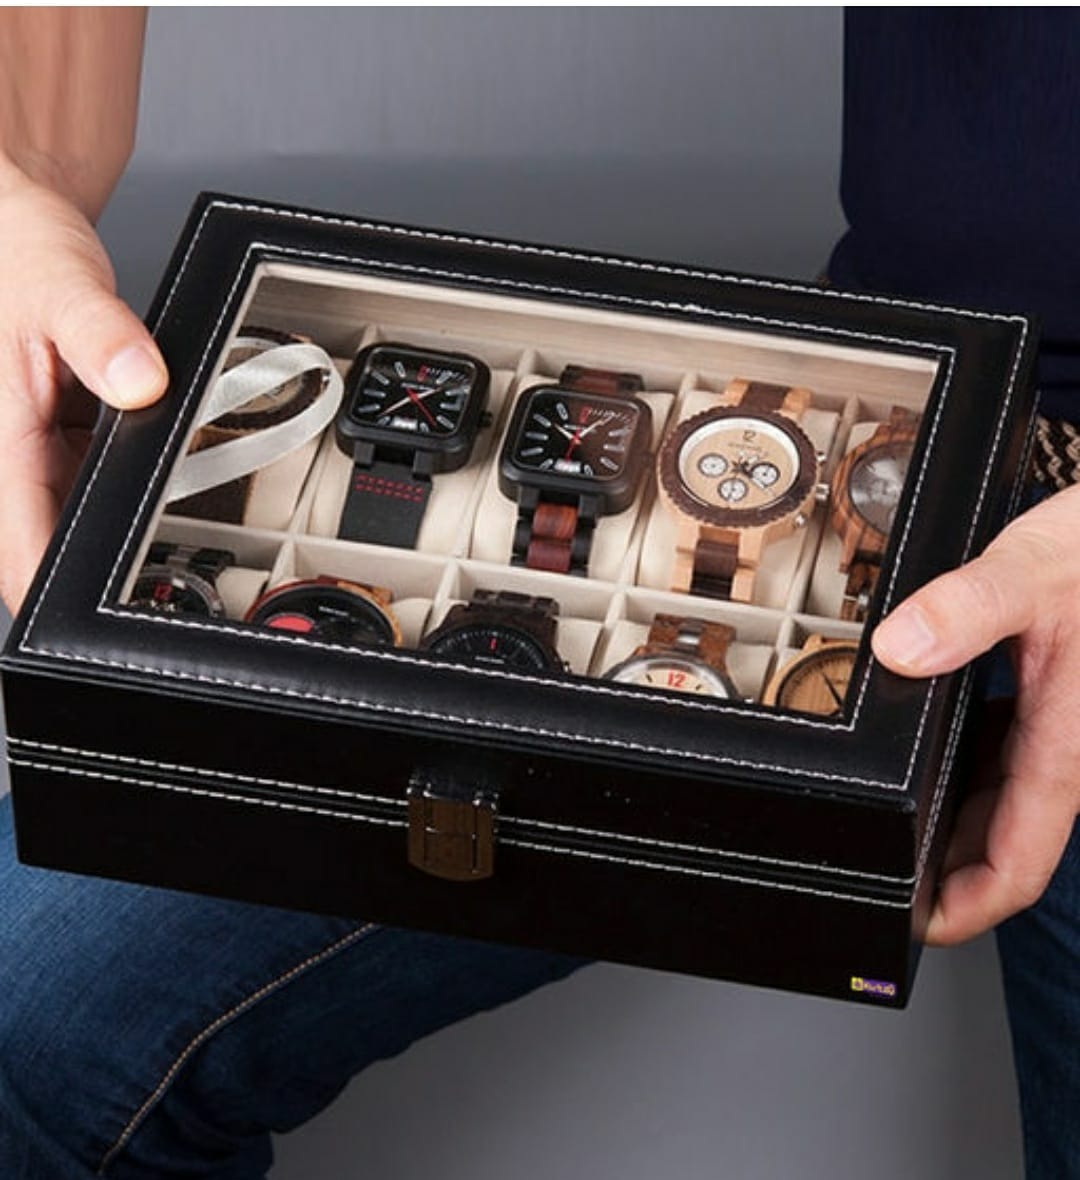 Sama RTR Designer Watch Storage Box With C-Thru Glass Top, 10IN1 Watch Case - D402, Black